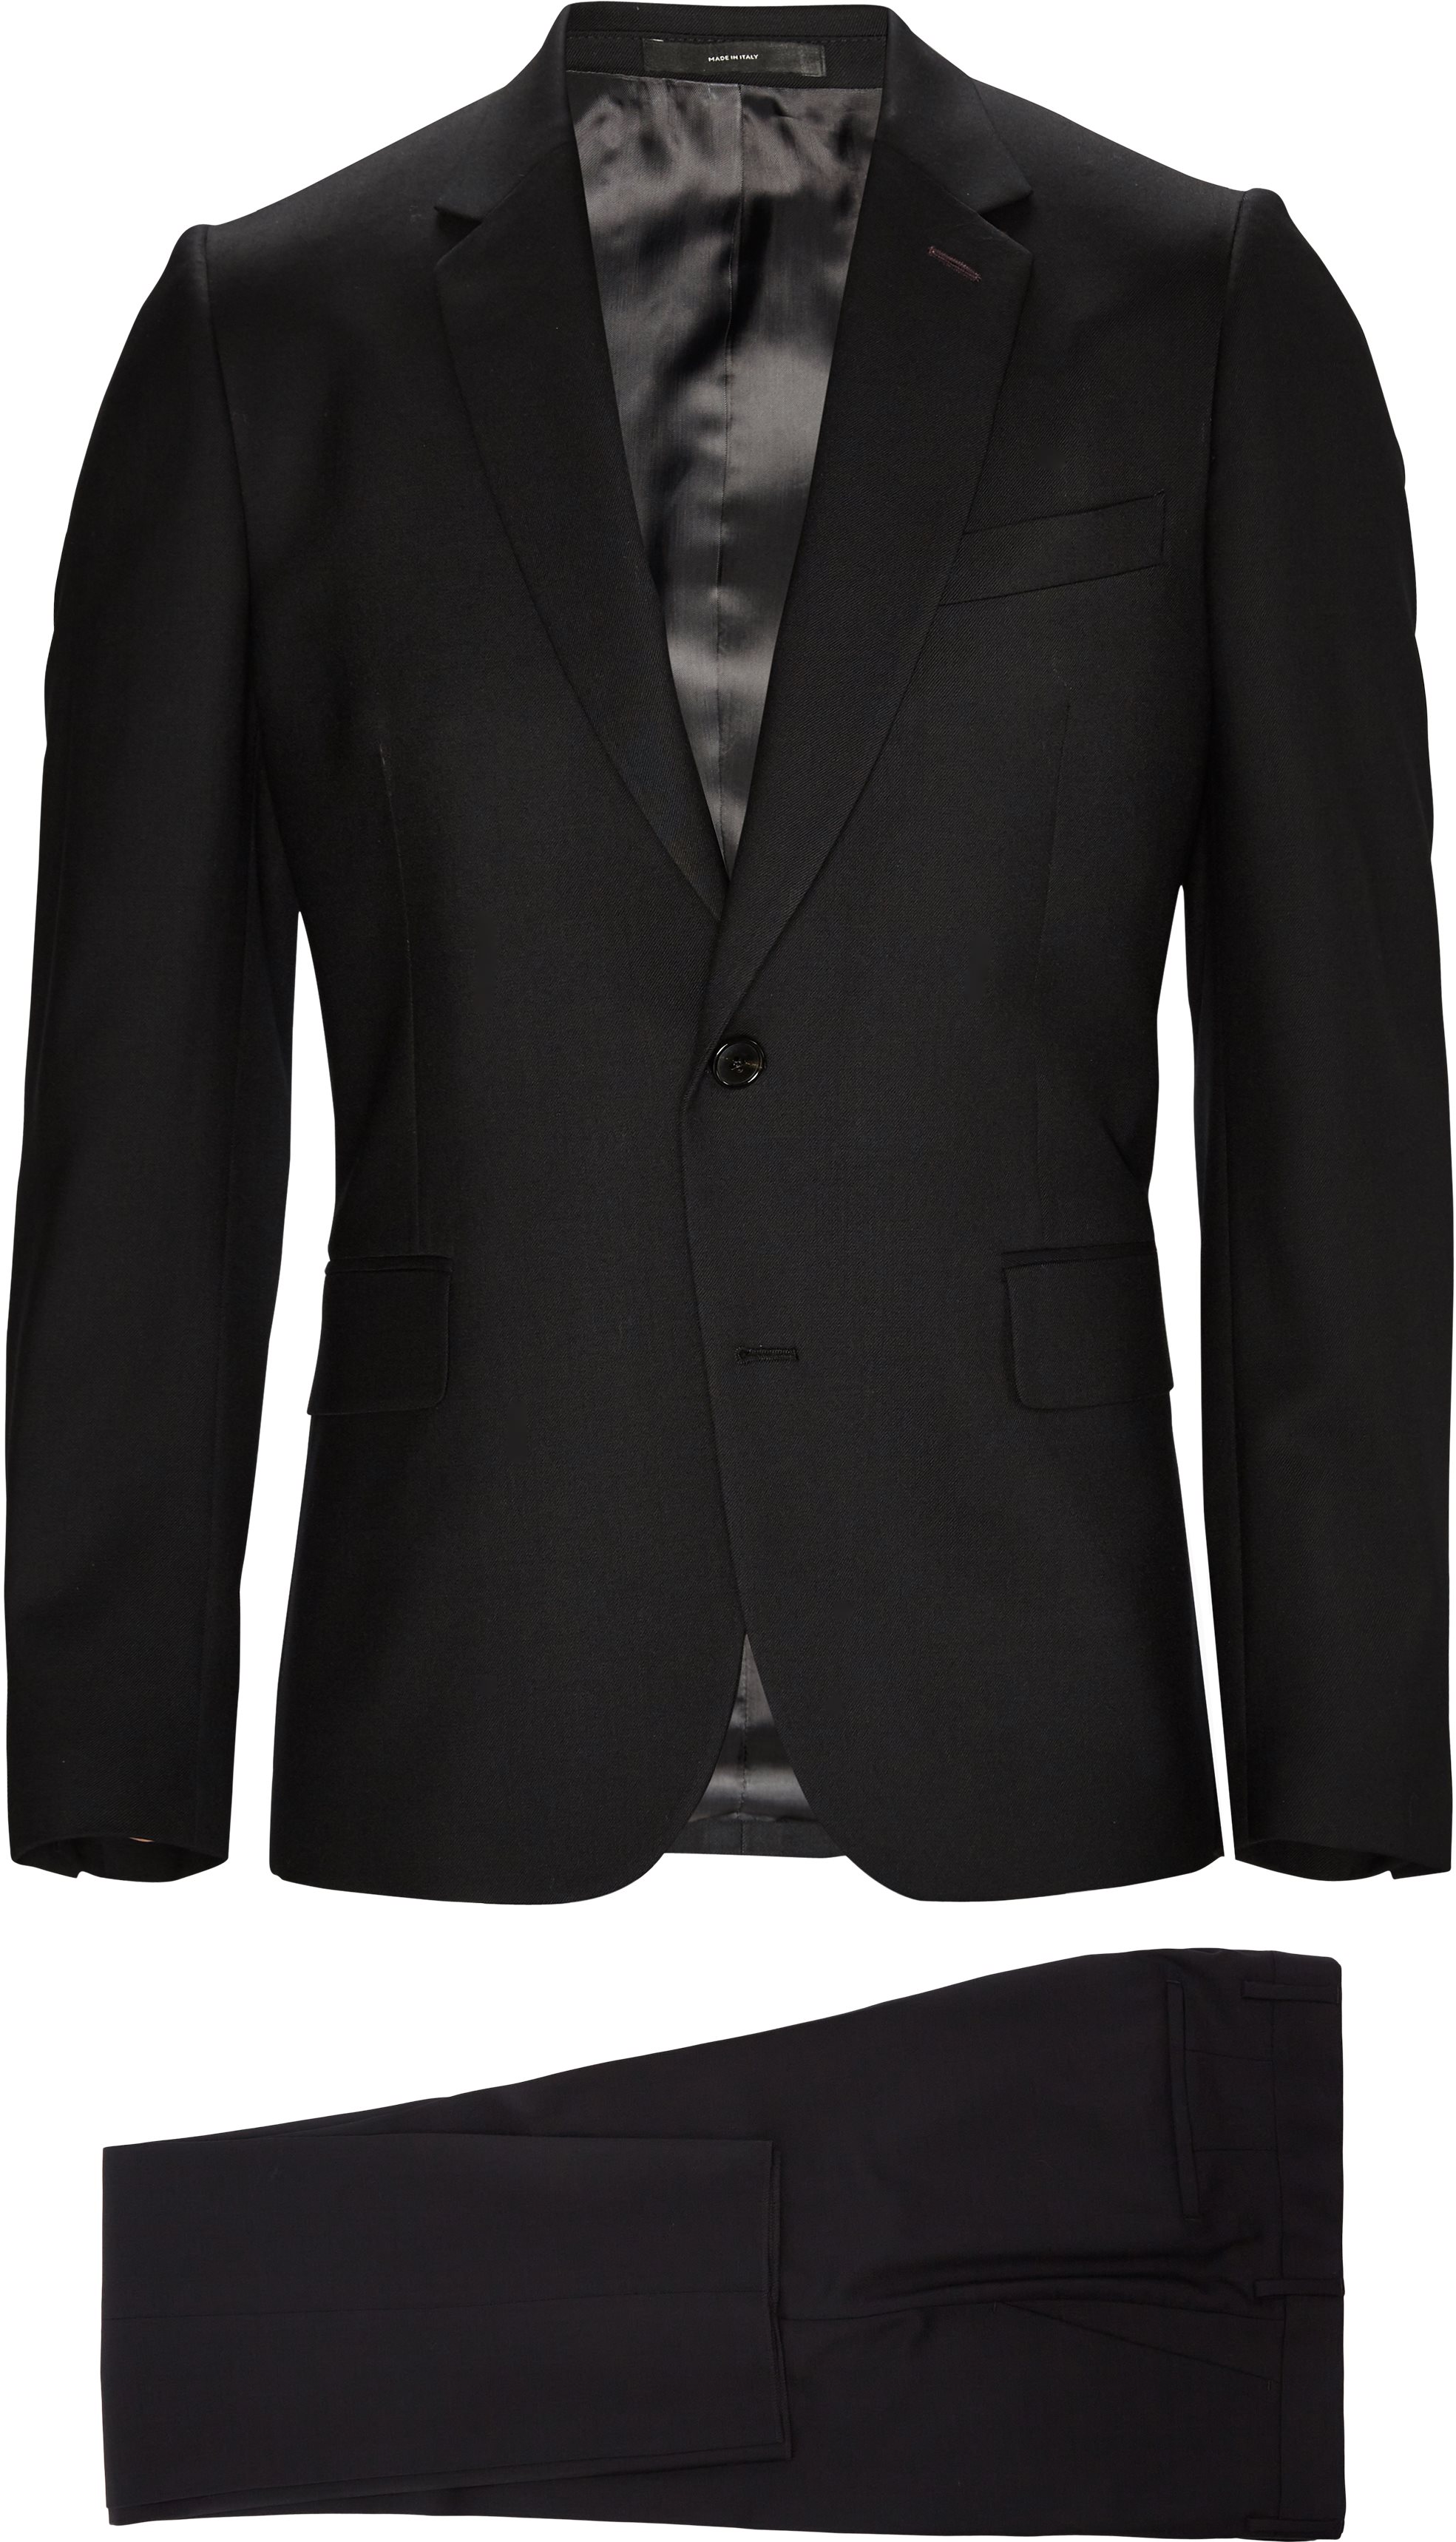 Suits - Slim fit - Black